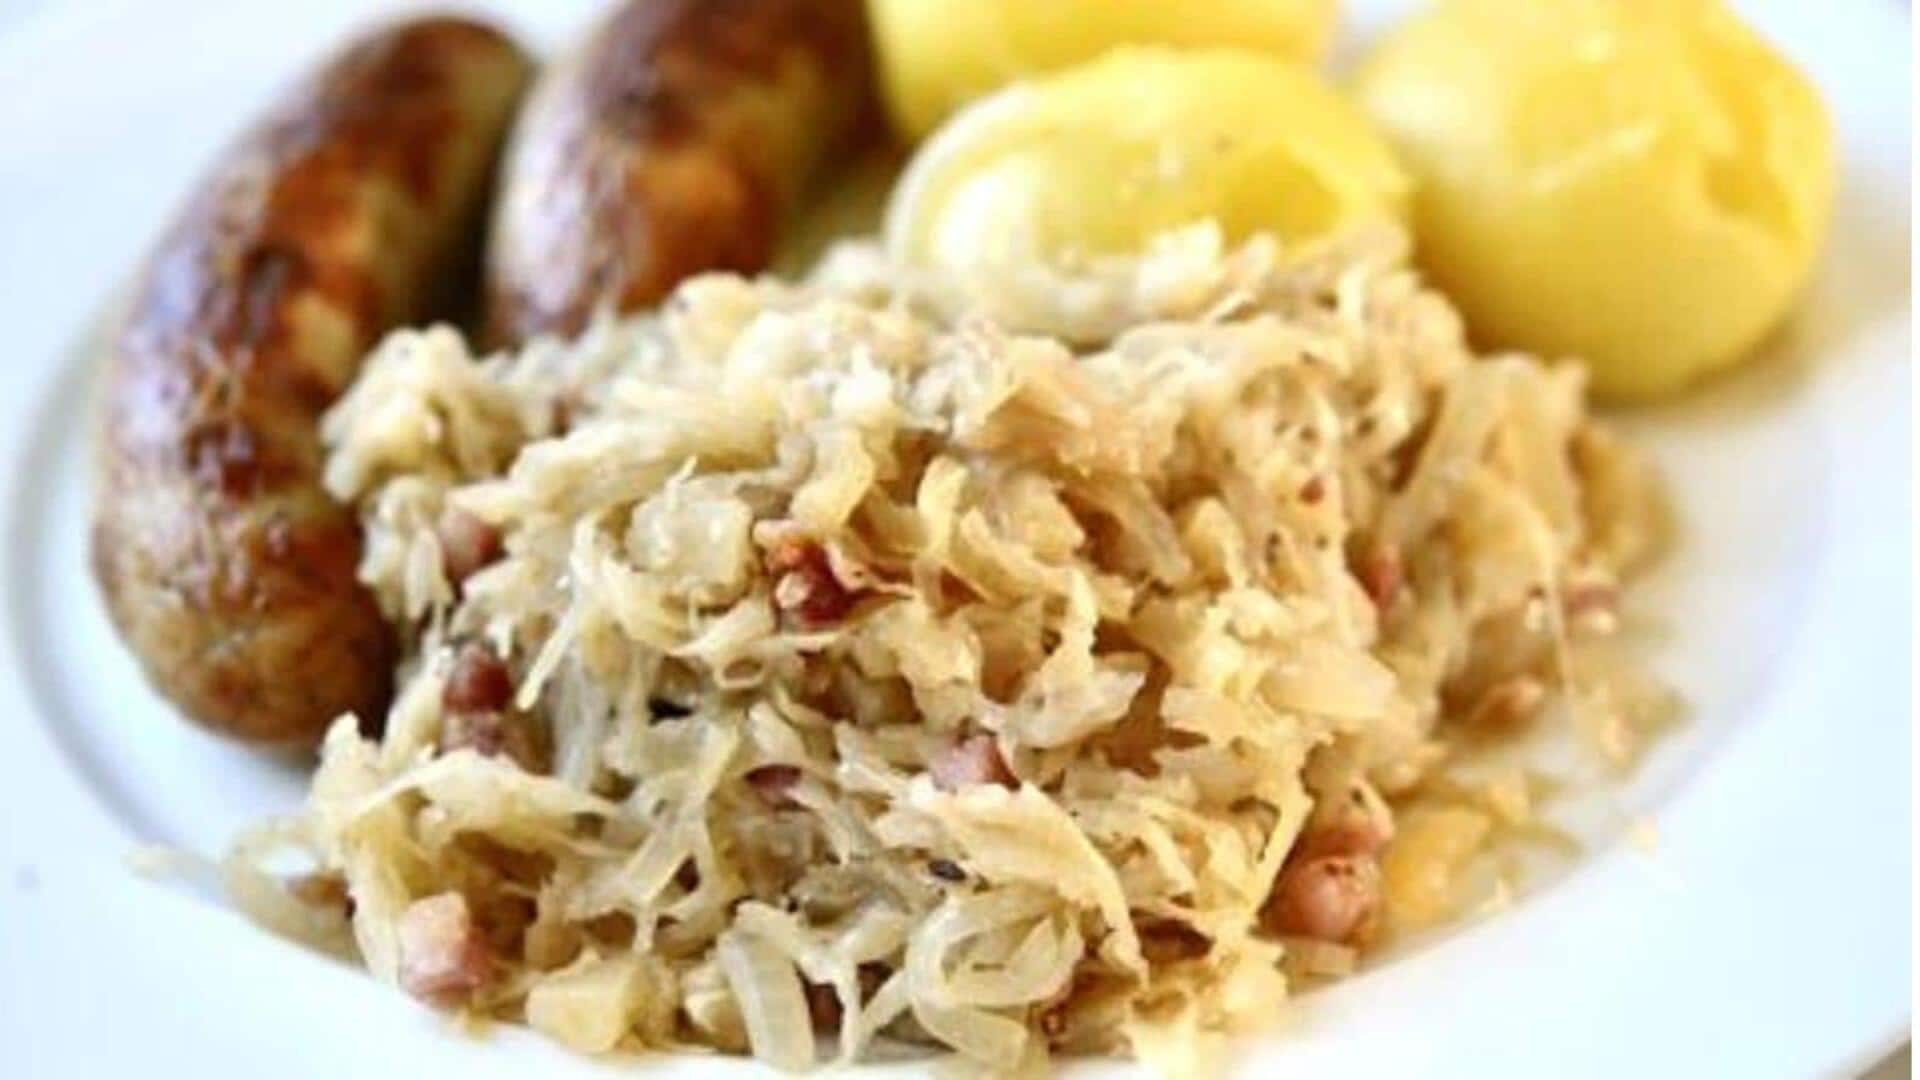 Coba casserole sauerkraut khas Jerman yang lezat ini